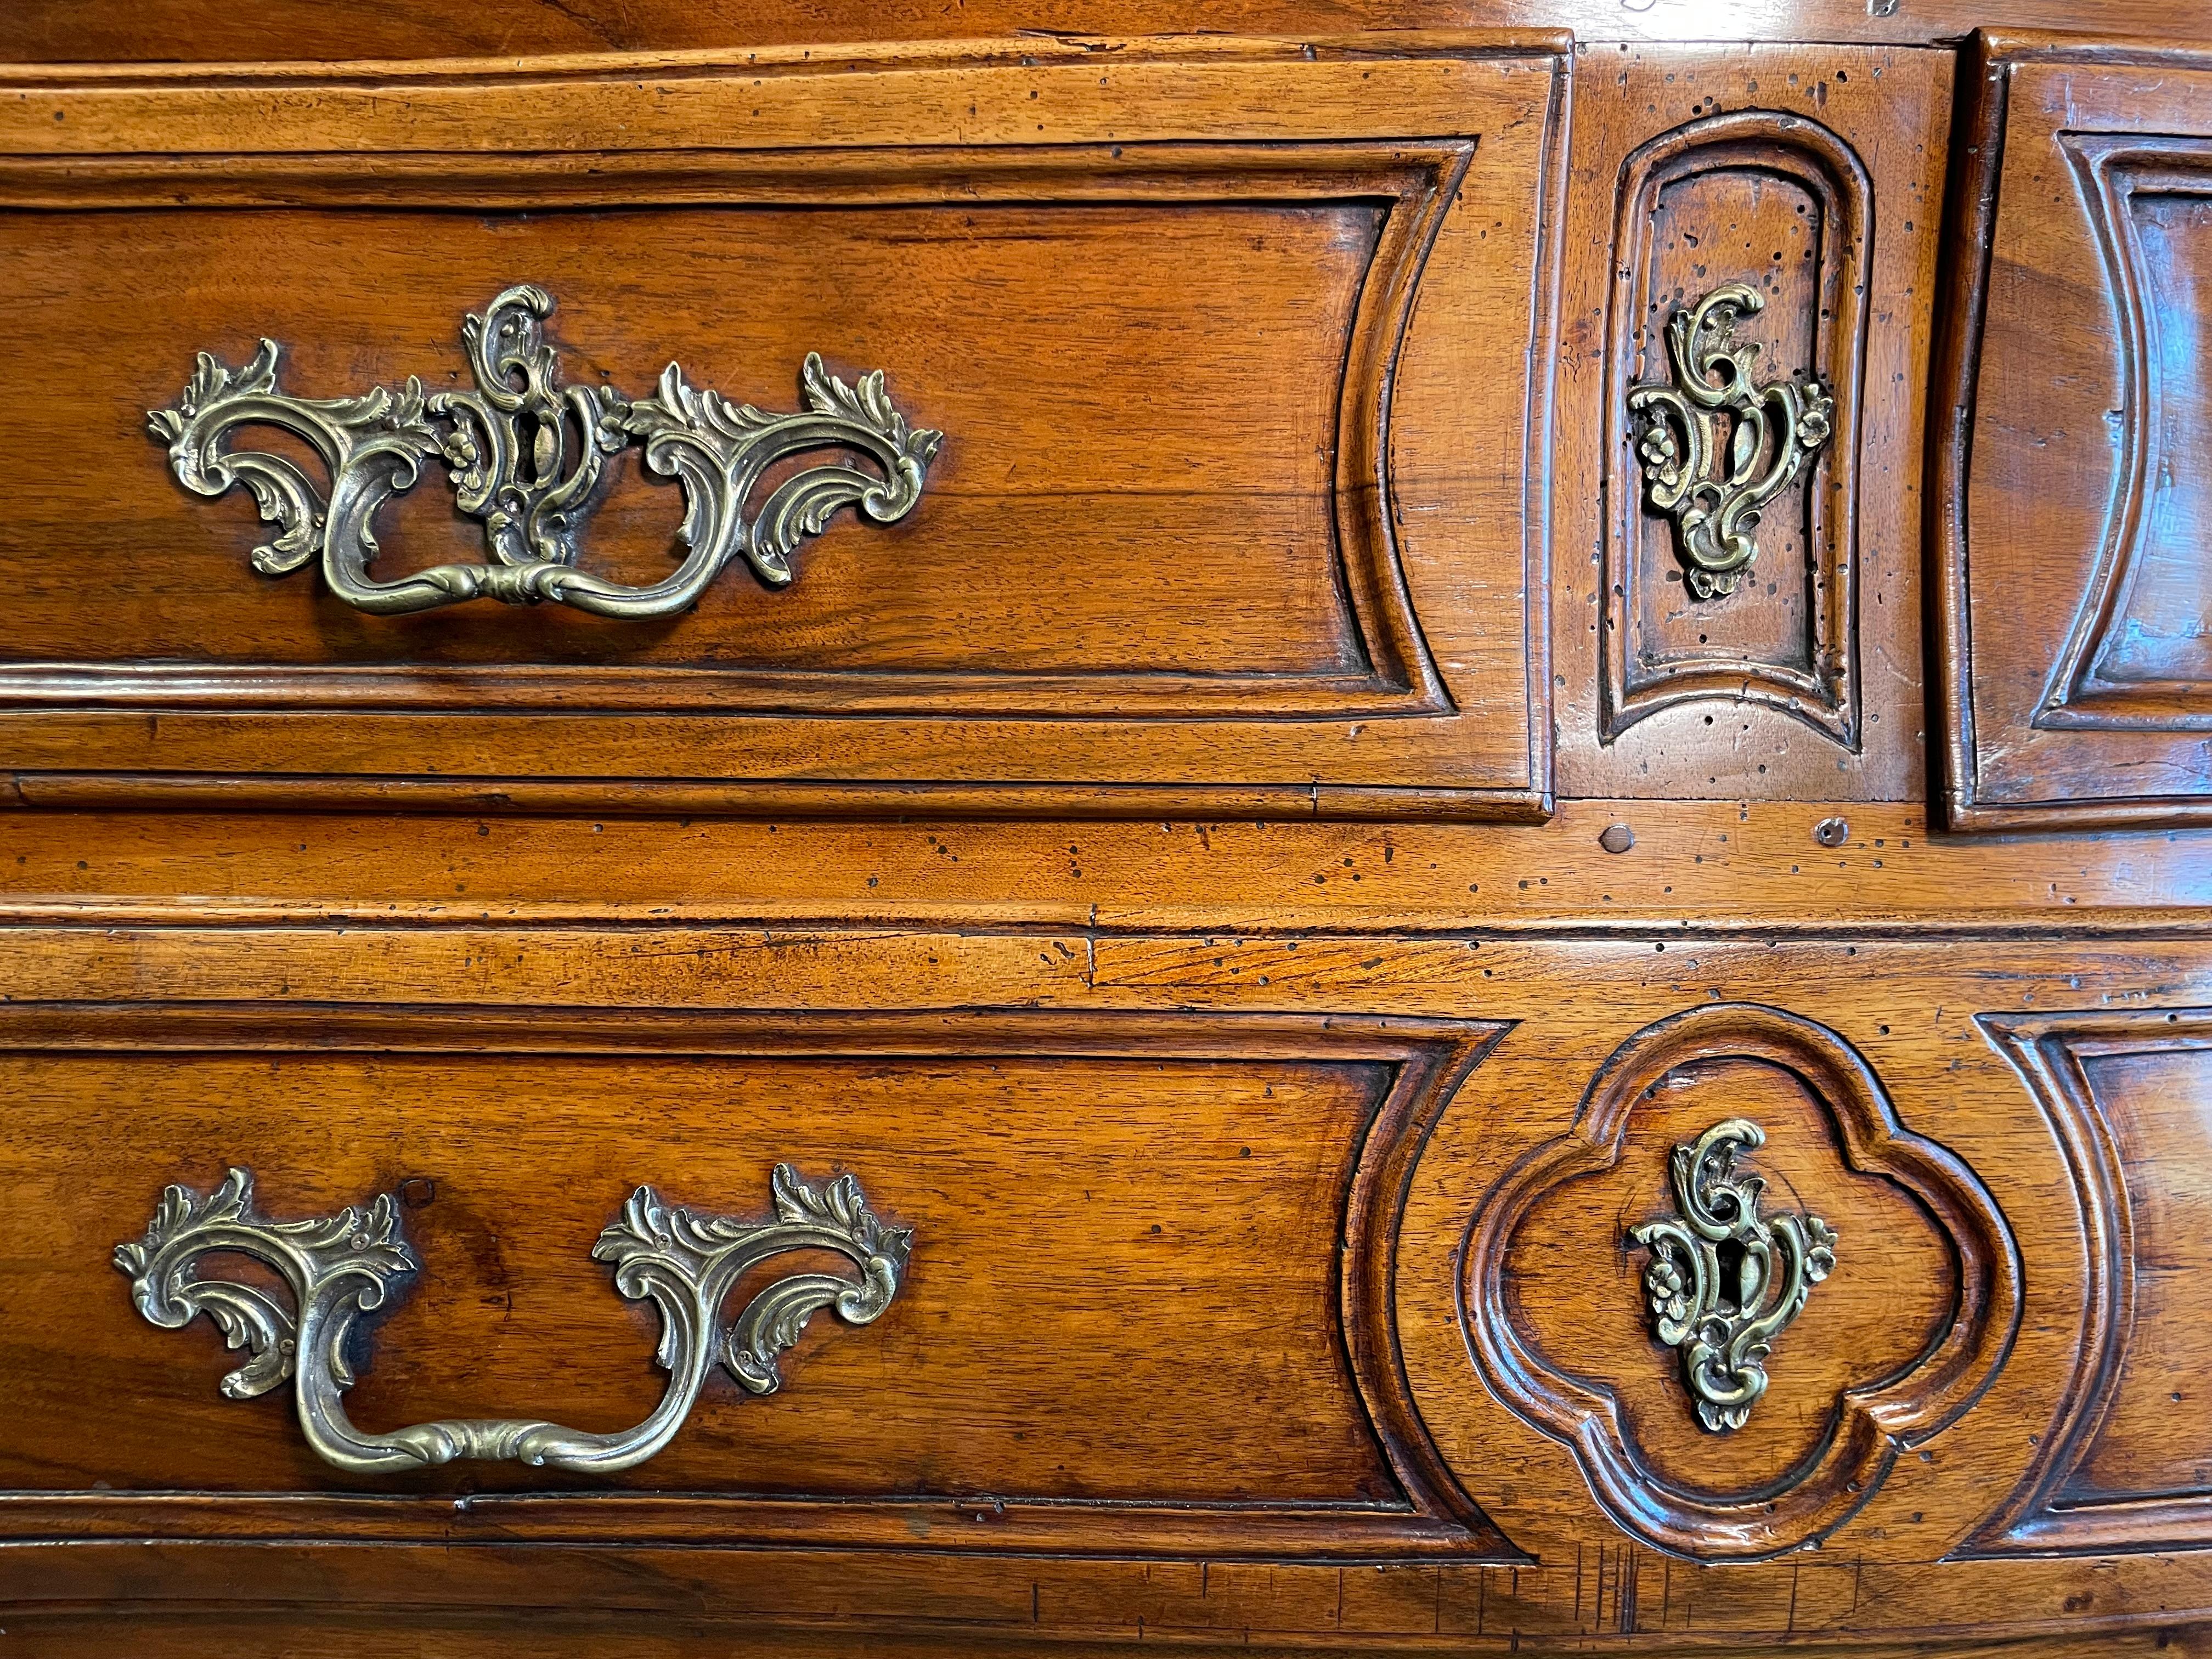 Diese hölzerne Bombay-Kommode mit 4 Schubladen aus dem 18. Jahrhundert ist seit über zwei Jahrhunderten ununterbrochen in Gebrauch. Mit zwei Schubladen oben und zwei größeren Schubladen unten bietet er eine Fülle von Platz. Die originalen,